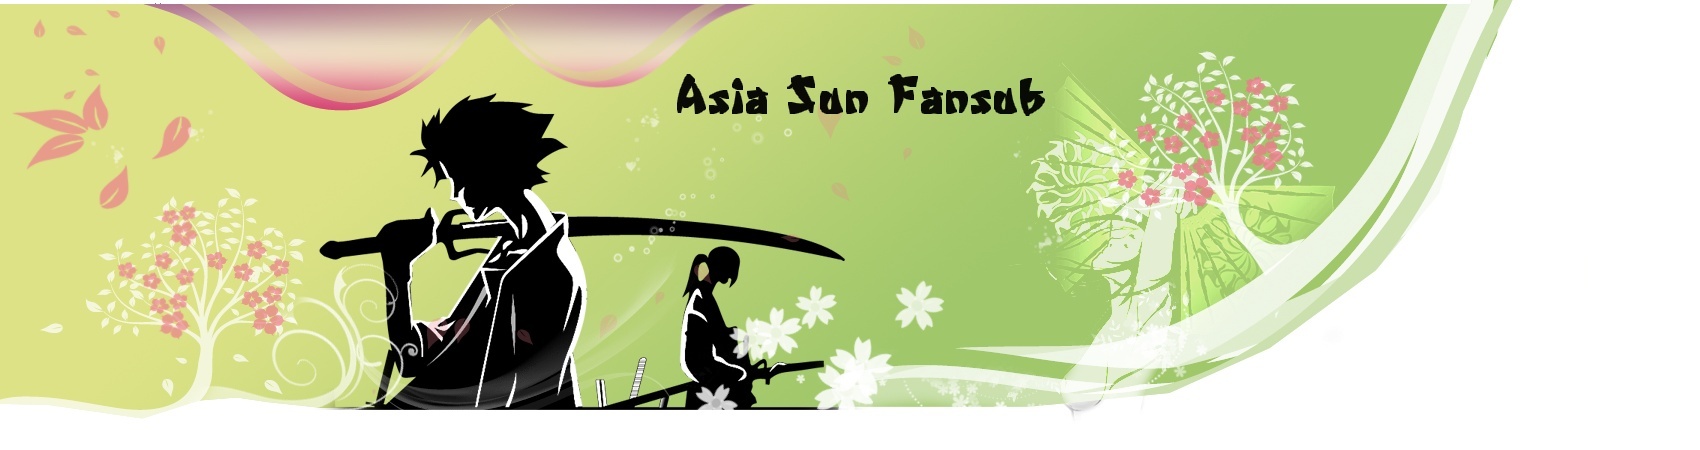 Bannière de la team Asia Sun Fansub